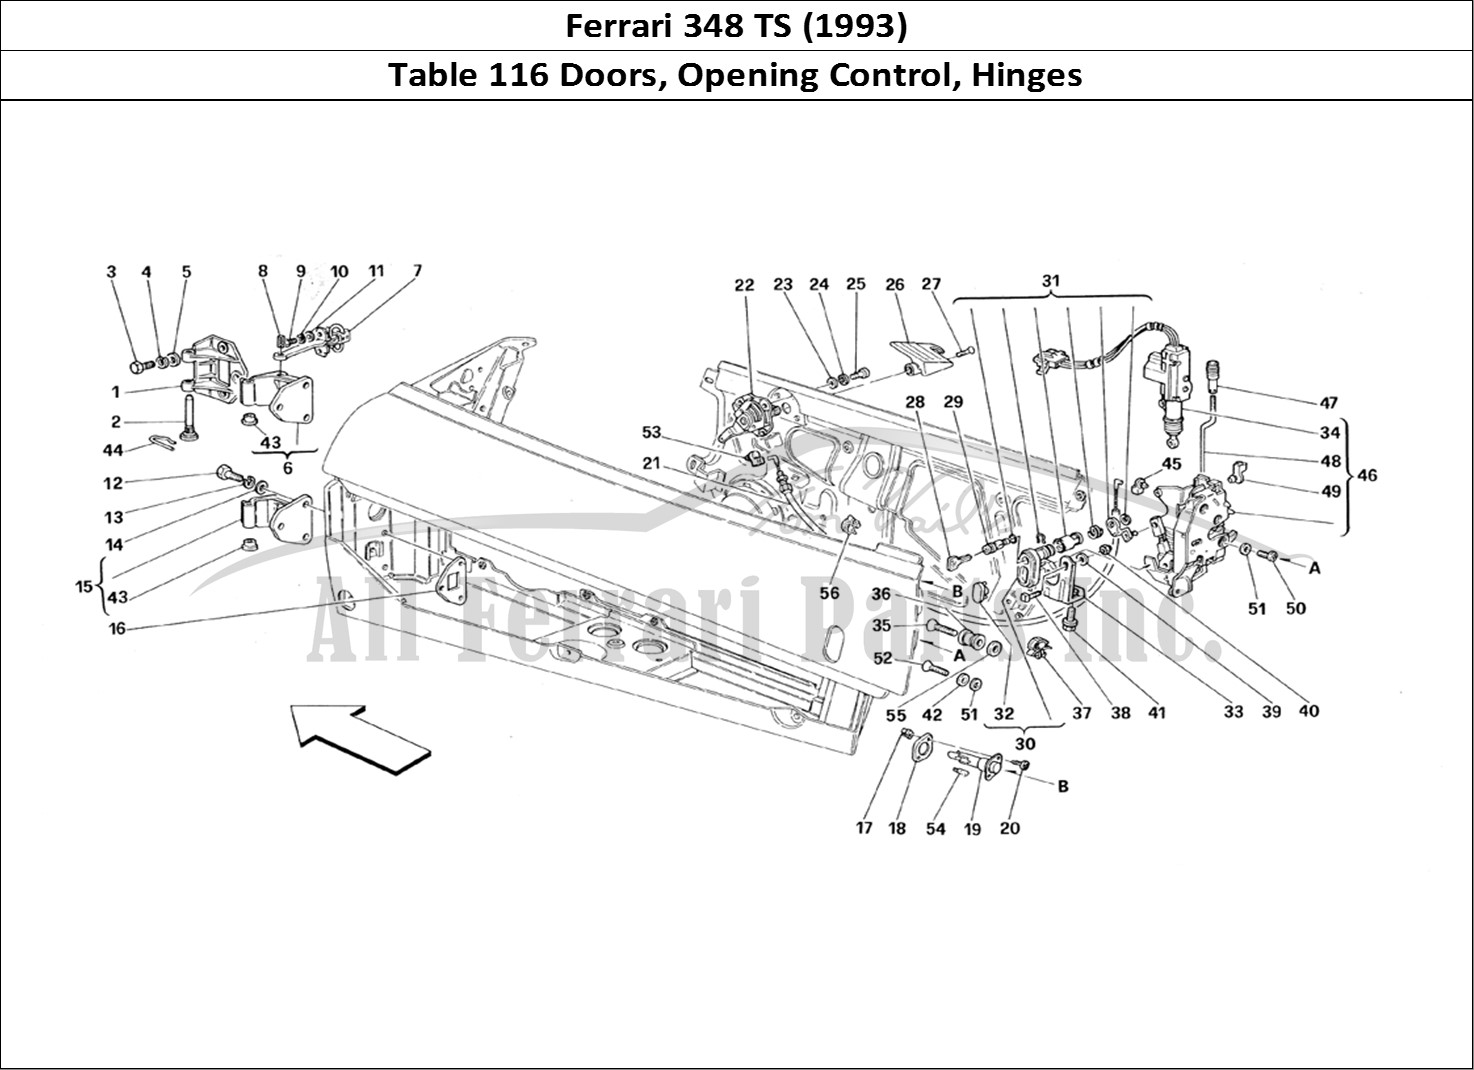 Ferrari Parts Ferrari 348 TB (1993) Page 116 Doors - Opening Control a